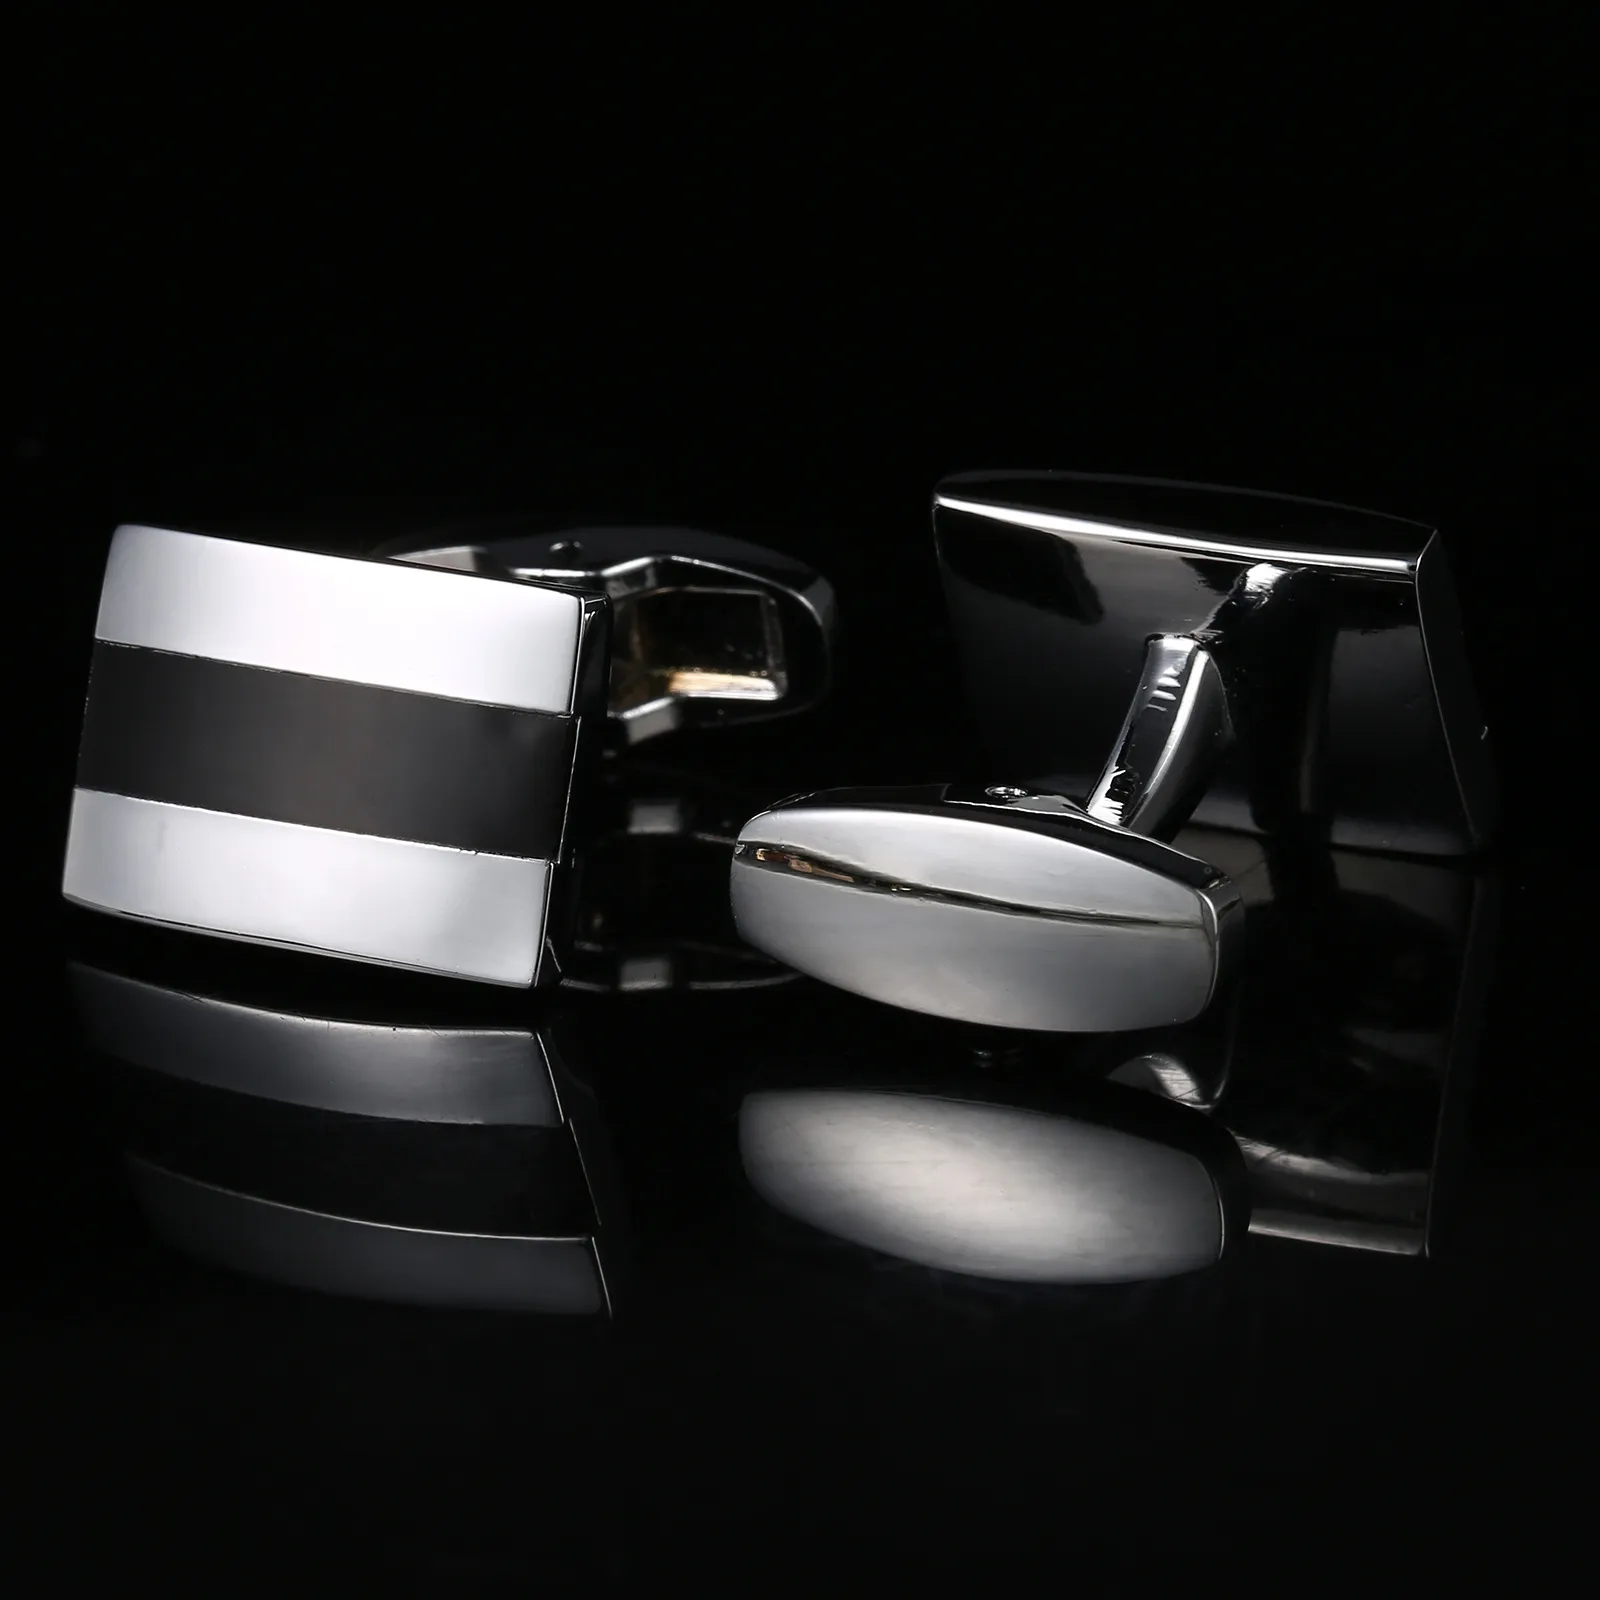 Basit Siyah Ve Beyaz Fransız Kol Düğmeleri Takı Gömlek Kol Düğmesi Erkek Marka Moda Manşet Bağlantı Düğün Damat Düğmesi Kol Düğmeleri AE5641623148